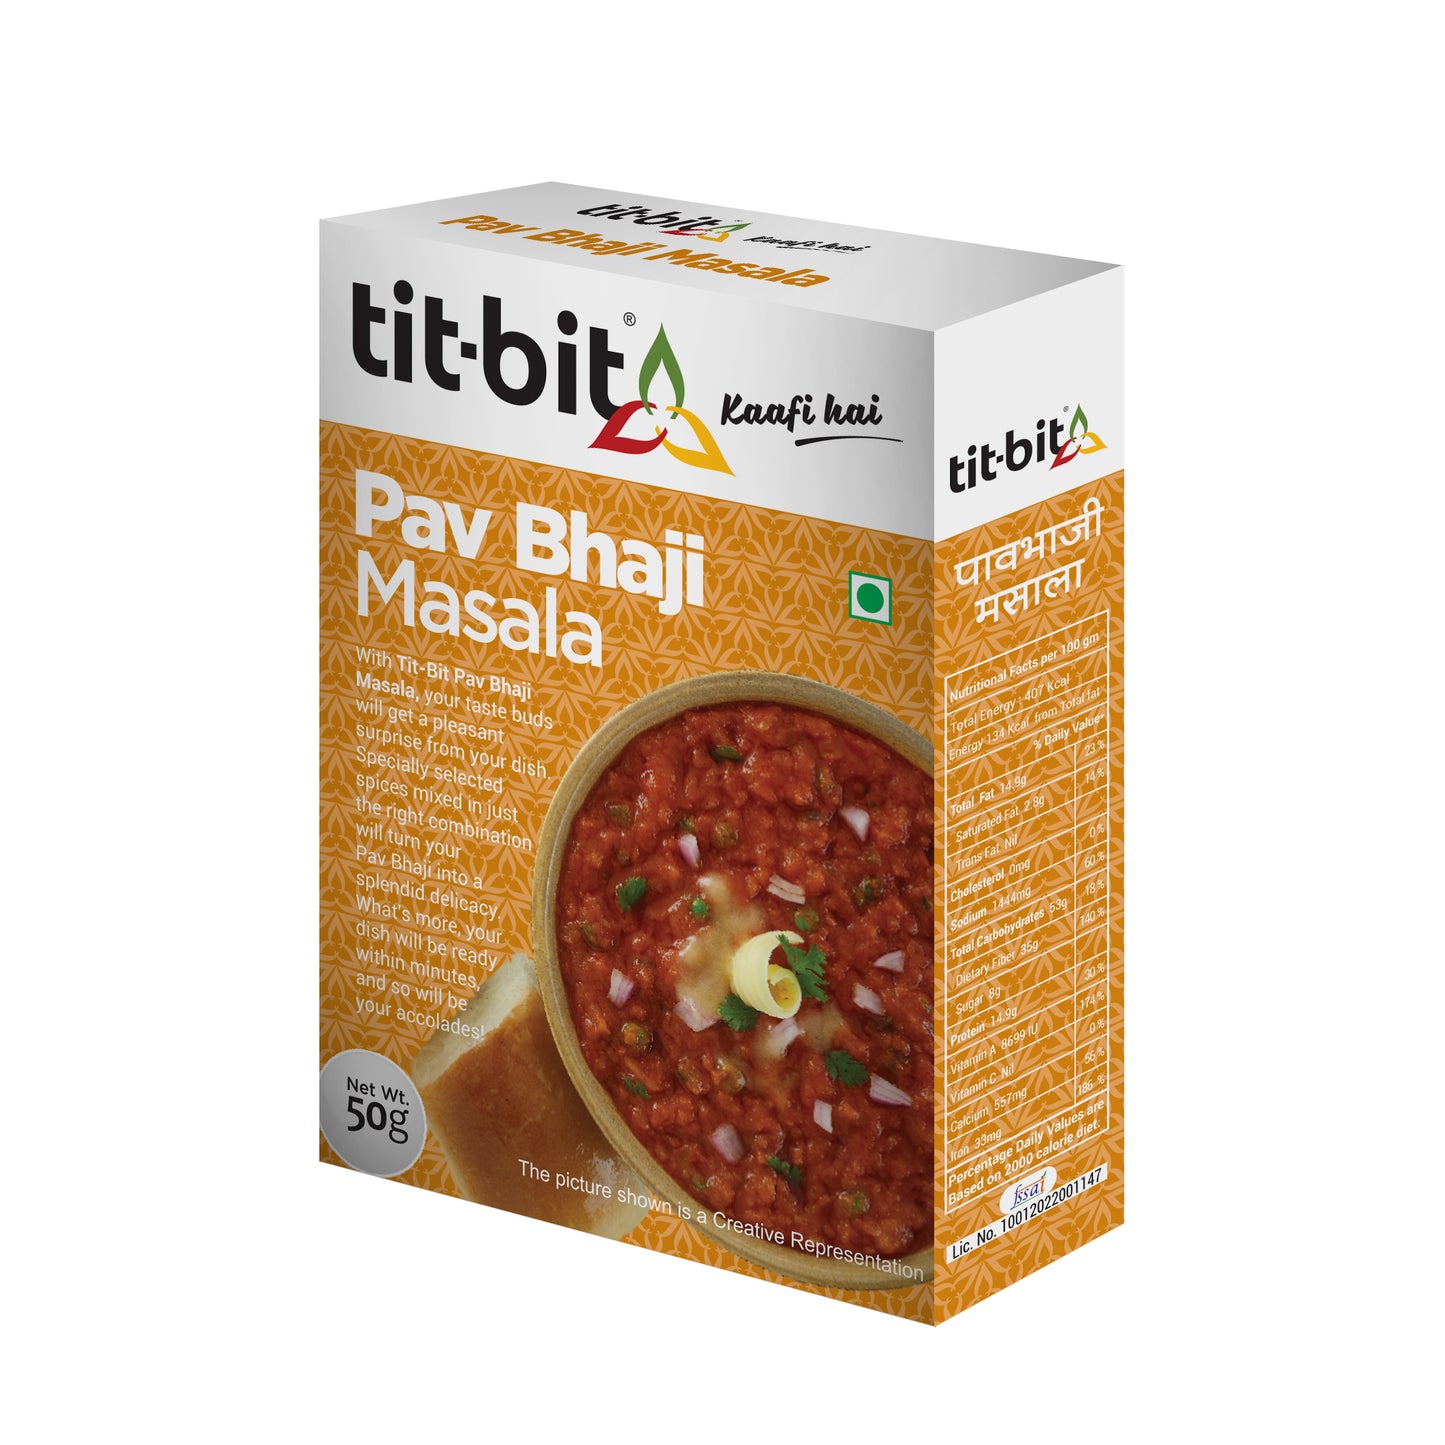 Tit-Bit Pav Bhaji Masala-50g Box